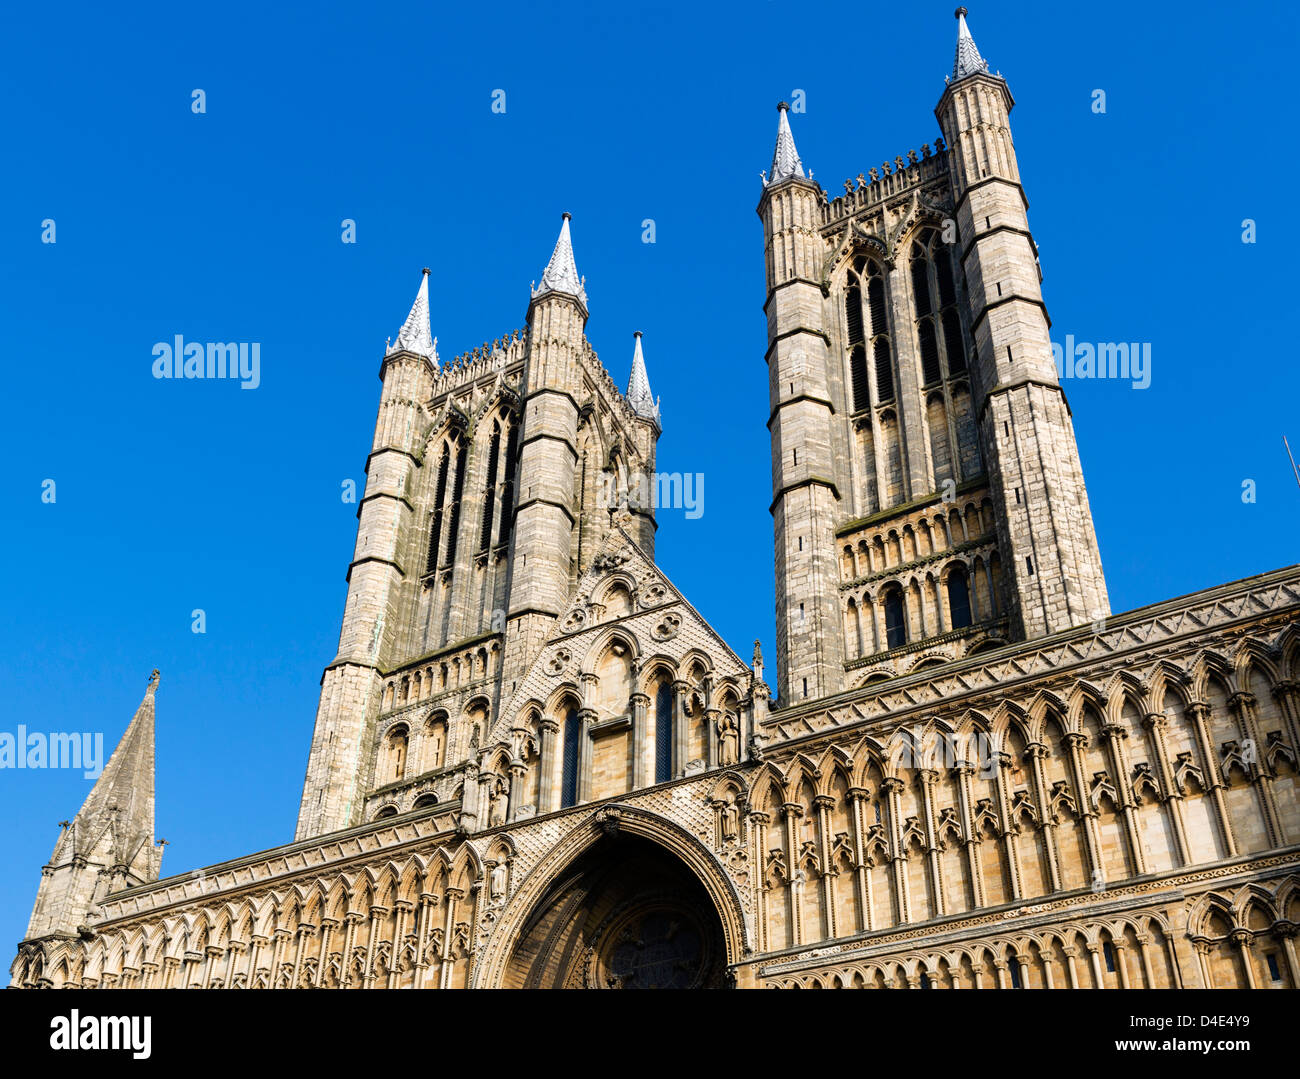 Westen vor der Kathedrale von Lincoln in der historischen Altstadt, Lincoln, Lincolnshire, East Midlands, UK Stockfoto